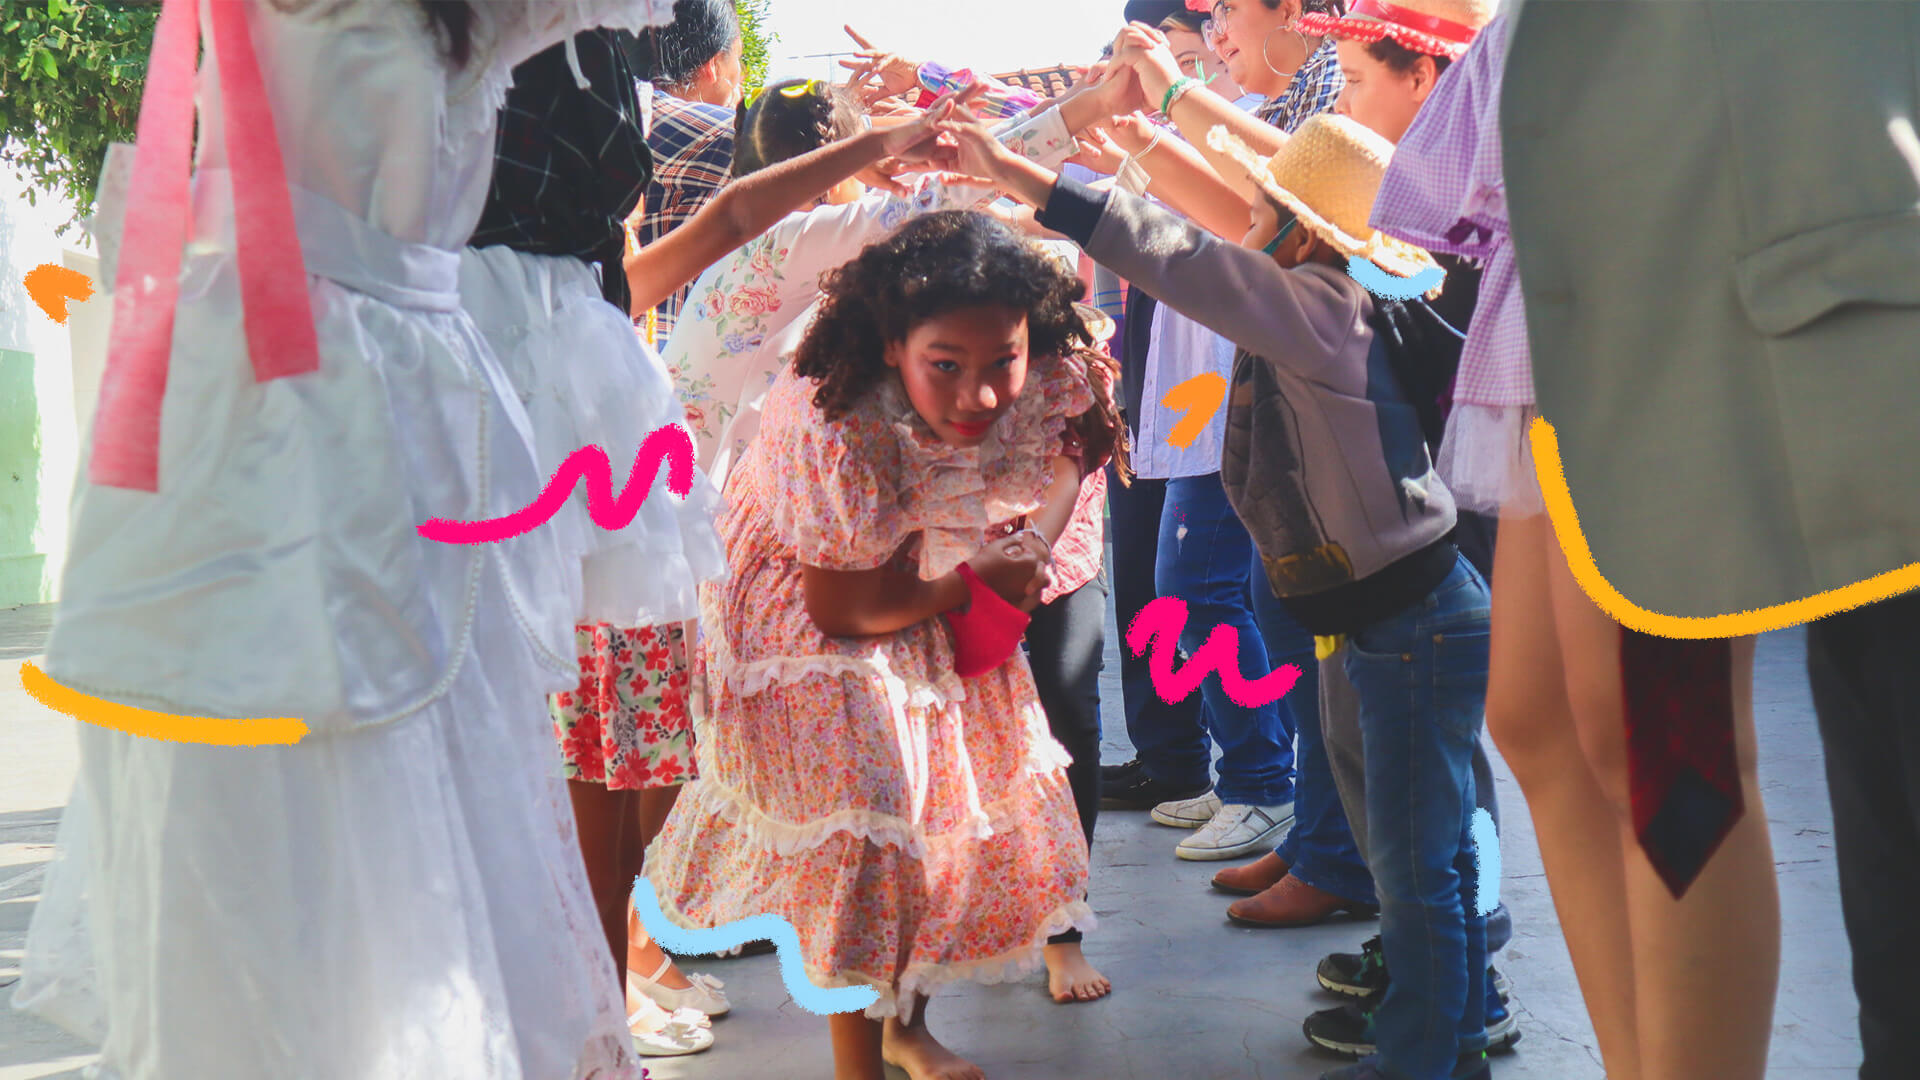 Uma menina com vestido estampado e colorido, típico de festa junina, passa debaixo de um túnel formado por pares de mãos dadas. A matéria é sobre crianças no São João.